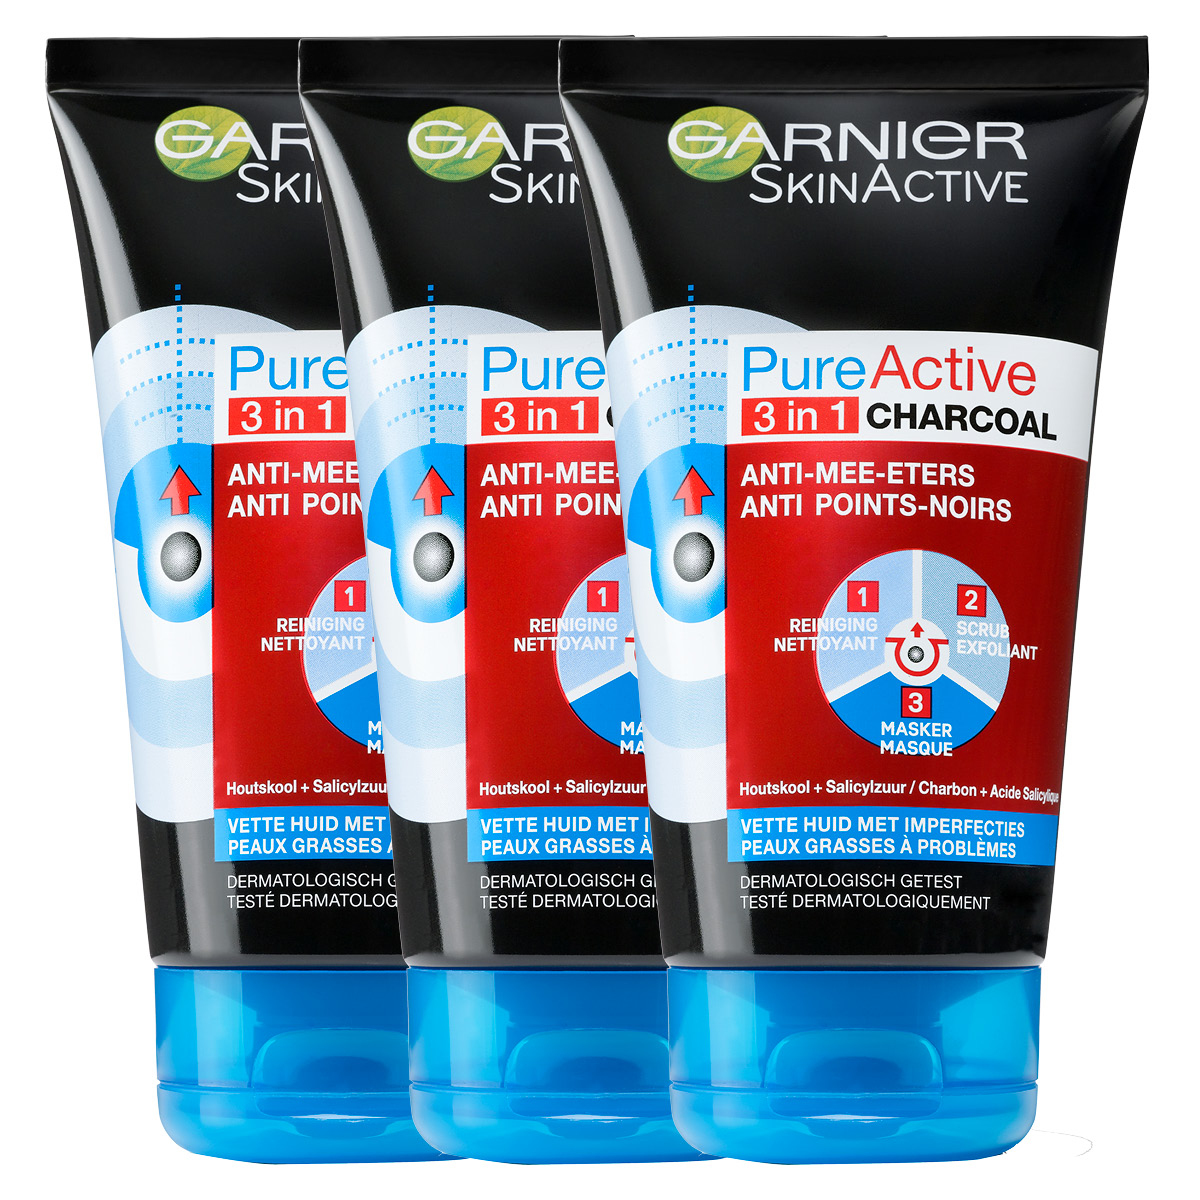 Garnier Skinactive Face PureActive 3-in-1 met Charcoal voor de Vette Huid met Imperfecties - 3 X 150 ml - Gezichtsreiniging